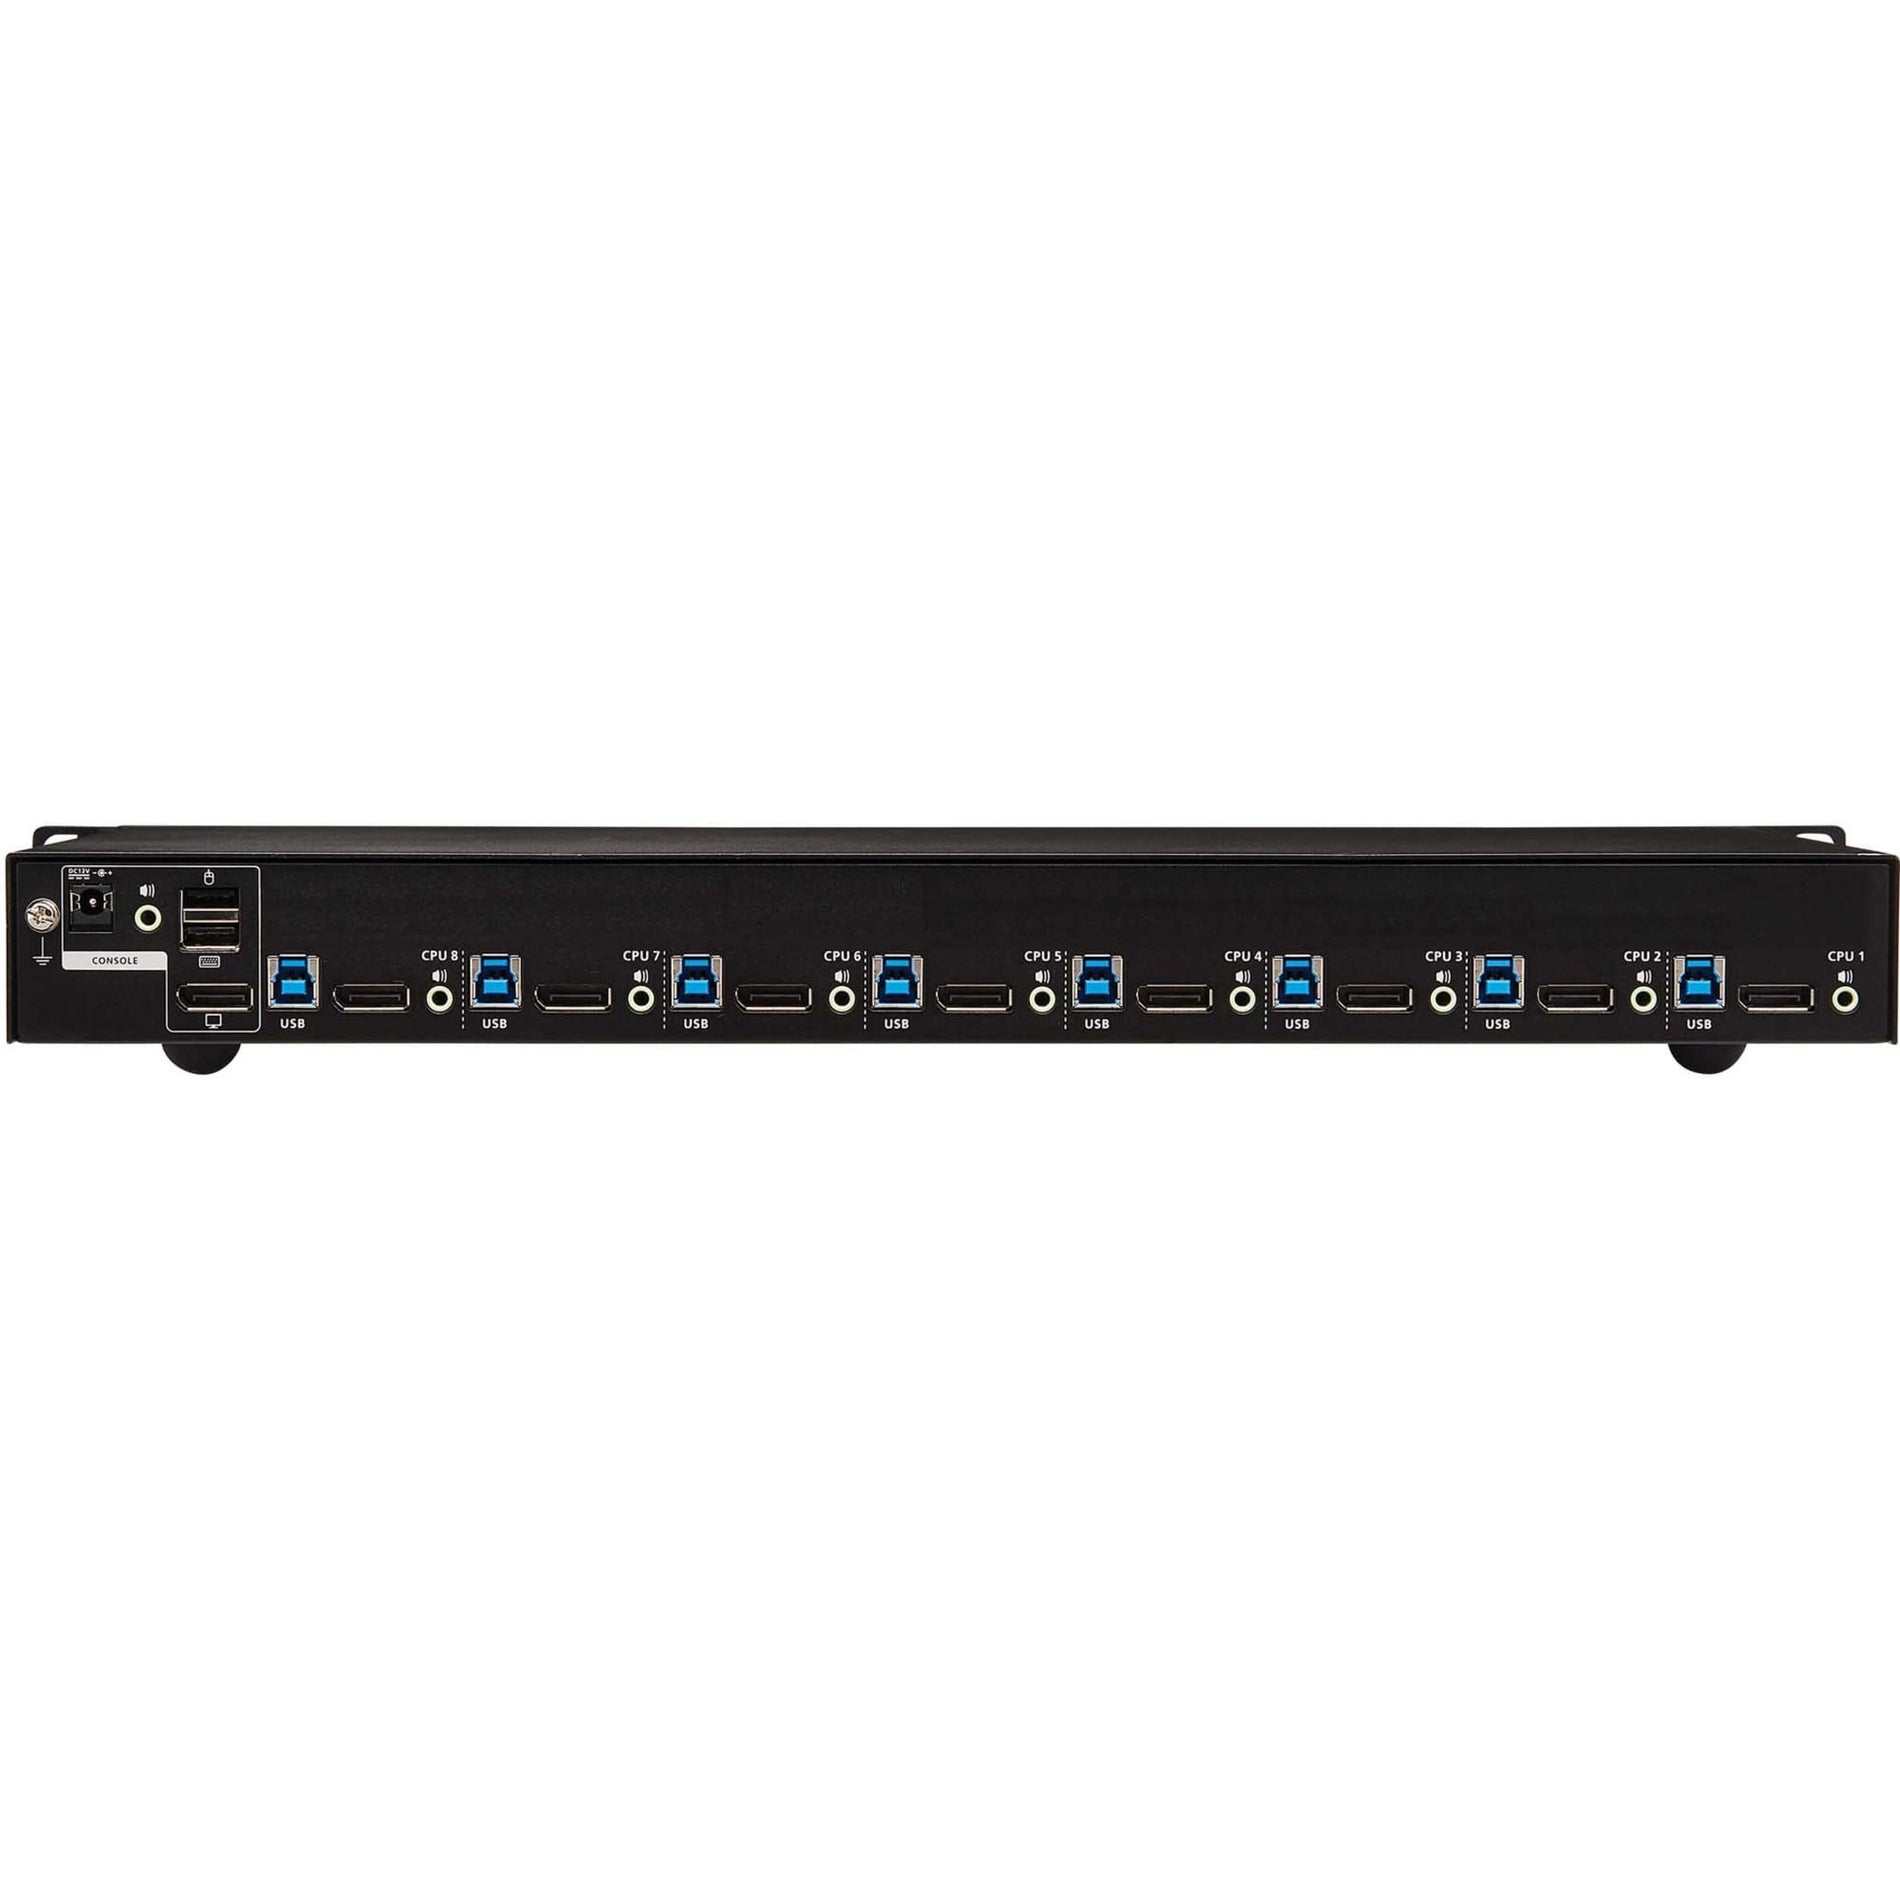 Tripp Lite B024-DPU08 8-Port DisplayPort/USB KVM Switch, 4K 60Hz, TAA Compliant